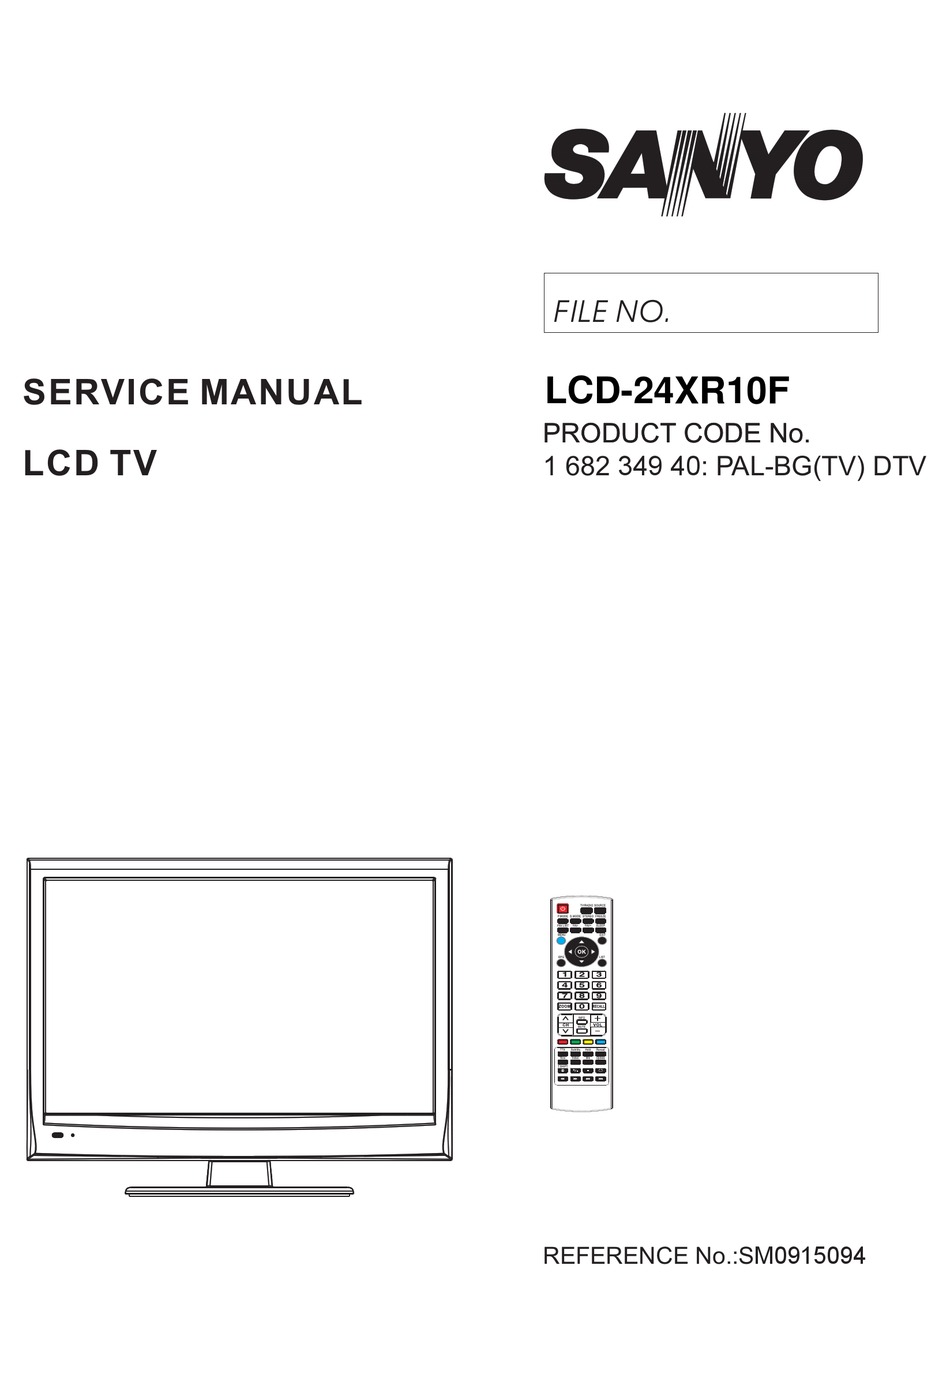 SANYO LCD-24XR10F SERVICE MANUAL Pdf Download | ManualsLib